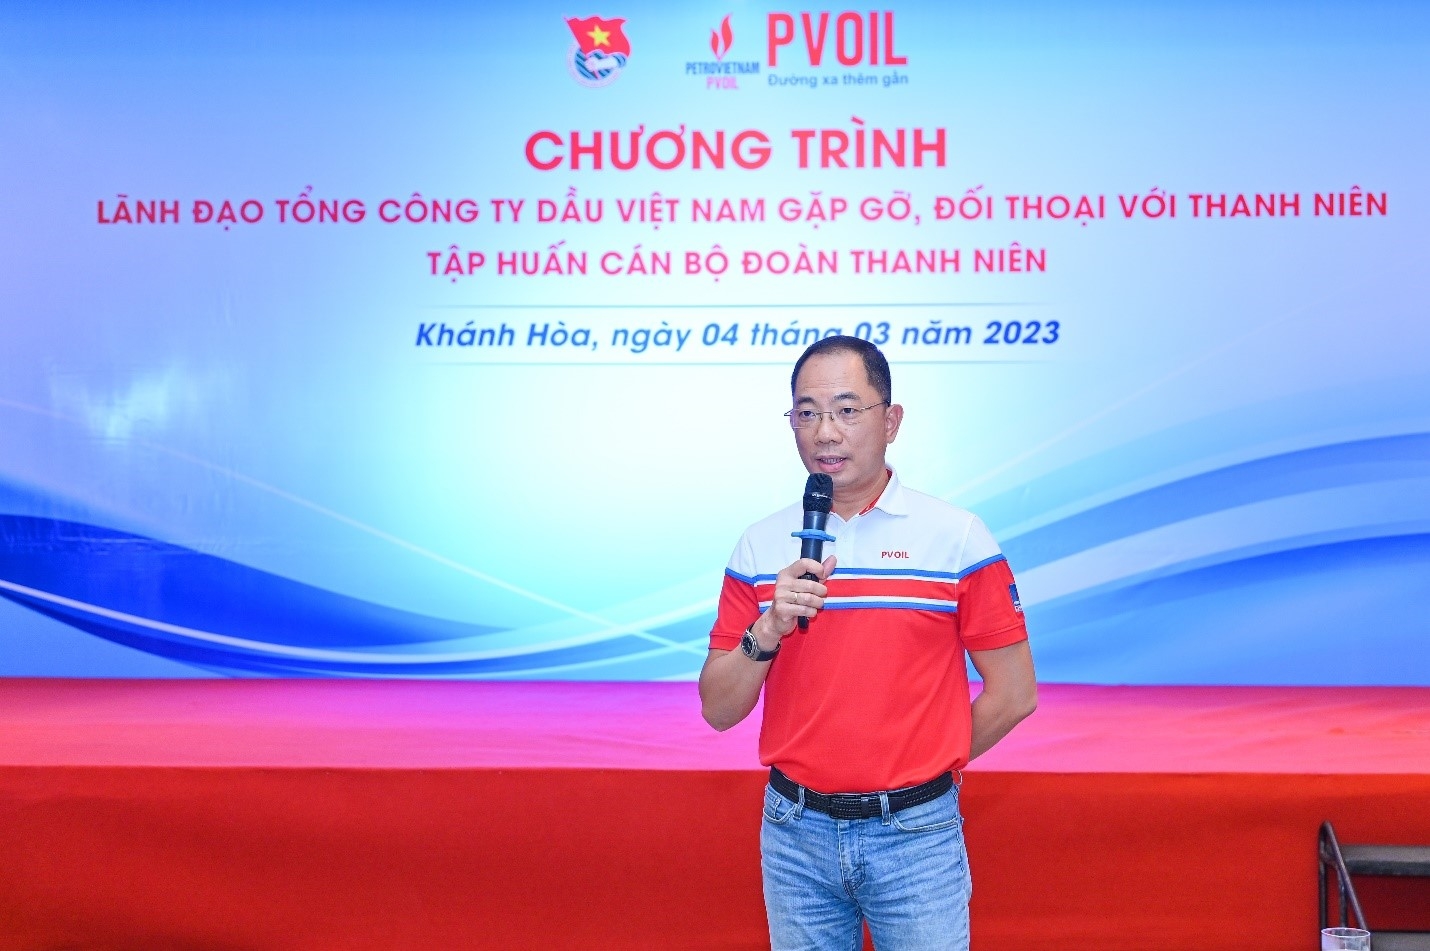 Đồng chí Cao Hoài Dương – Bí thư Đảng ủy, Chủ tịch HĐQT Tổng công ty chia sẻ thông tin với đoàn viên thanh niên